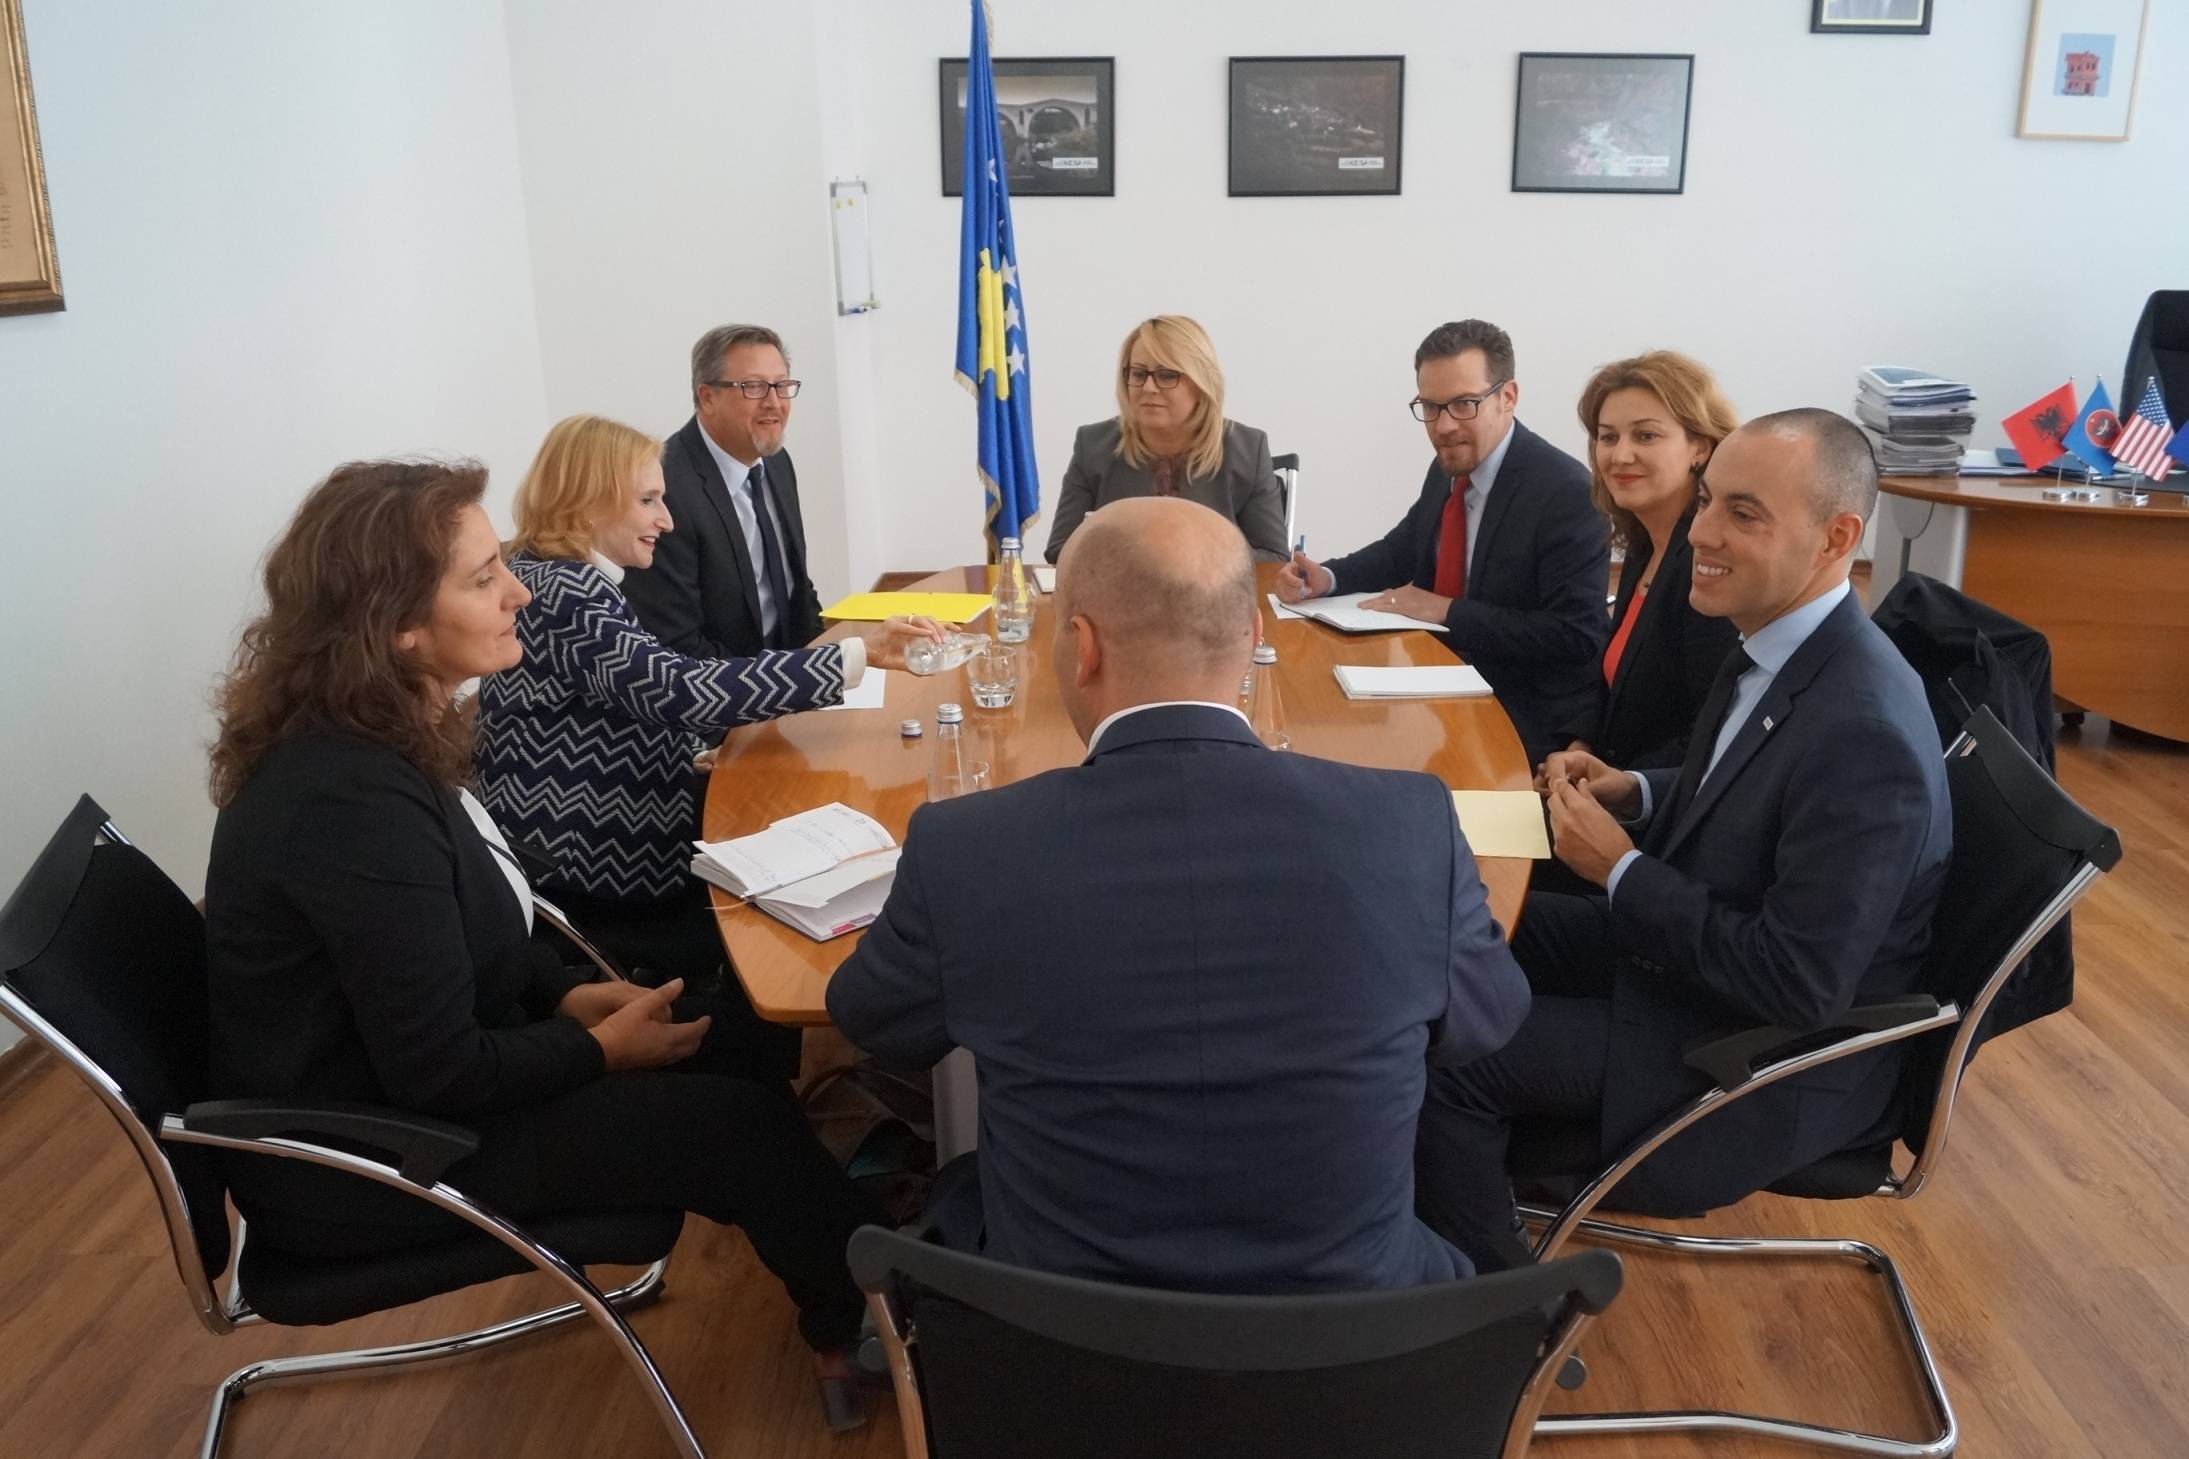 USAID do të thellojë edhe më tej bashkëpunimin me institucionet e Kosovës